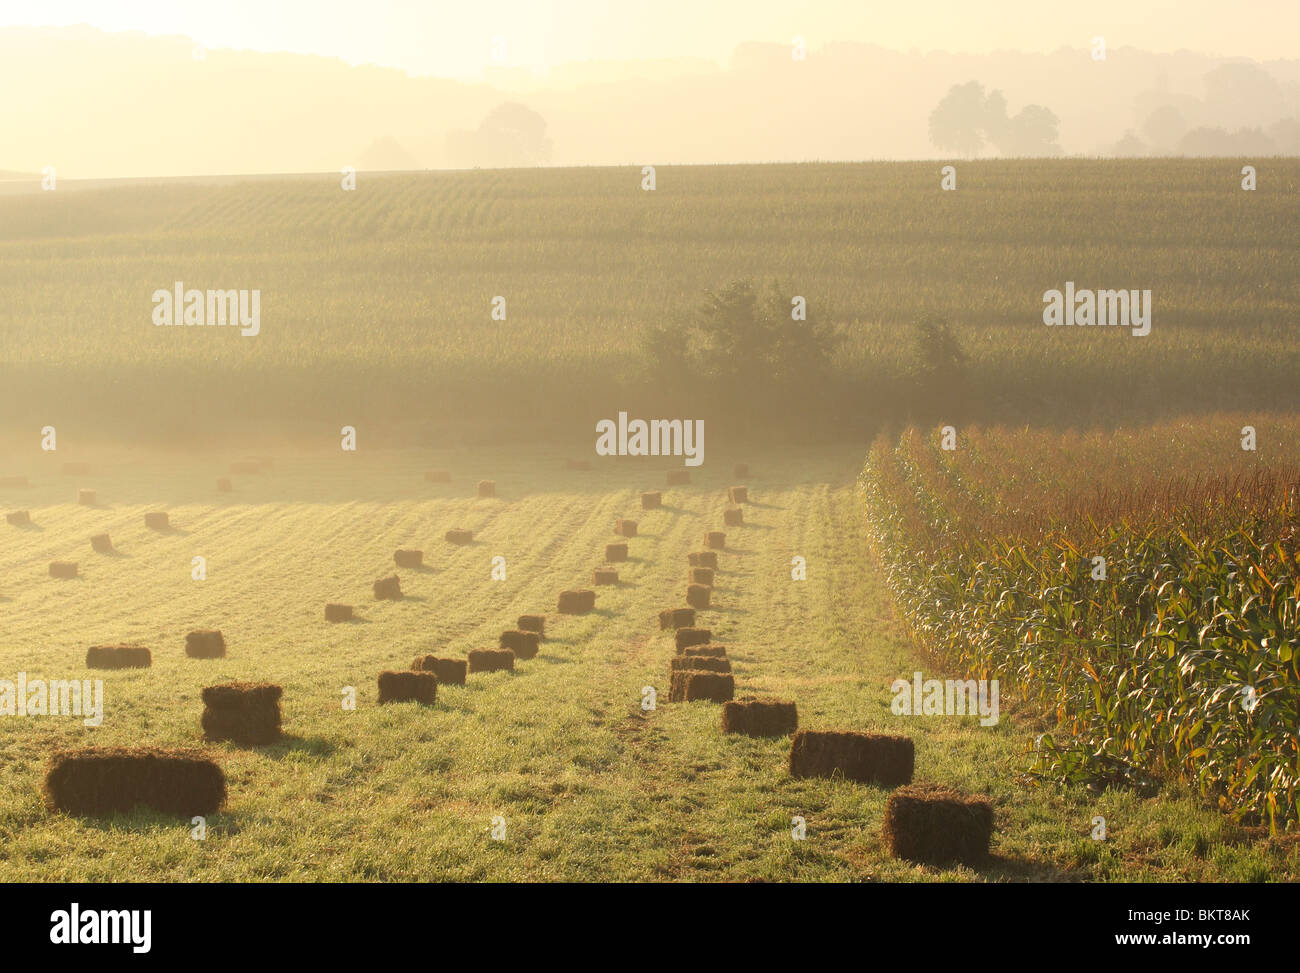 Blokken hooi en MaÃ¯sakker (Zea mays) met mist, BelgiÃ« Blocs of hay and Maize / corn field (Zea mays) with mist, Belgium Stock Photo